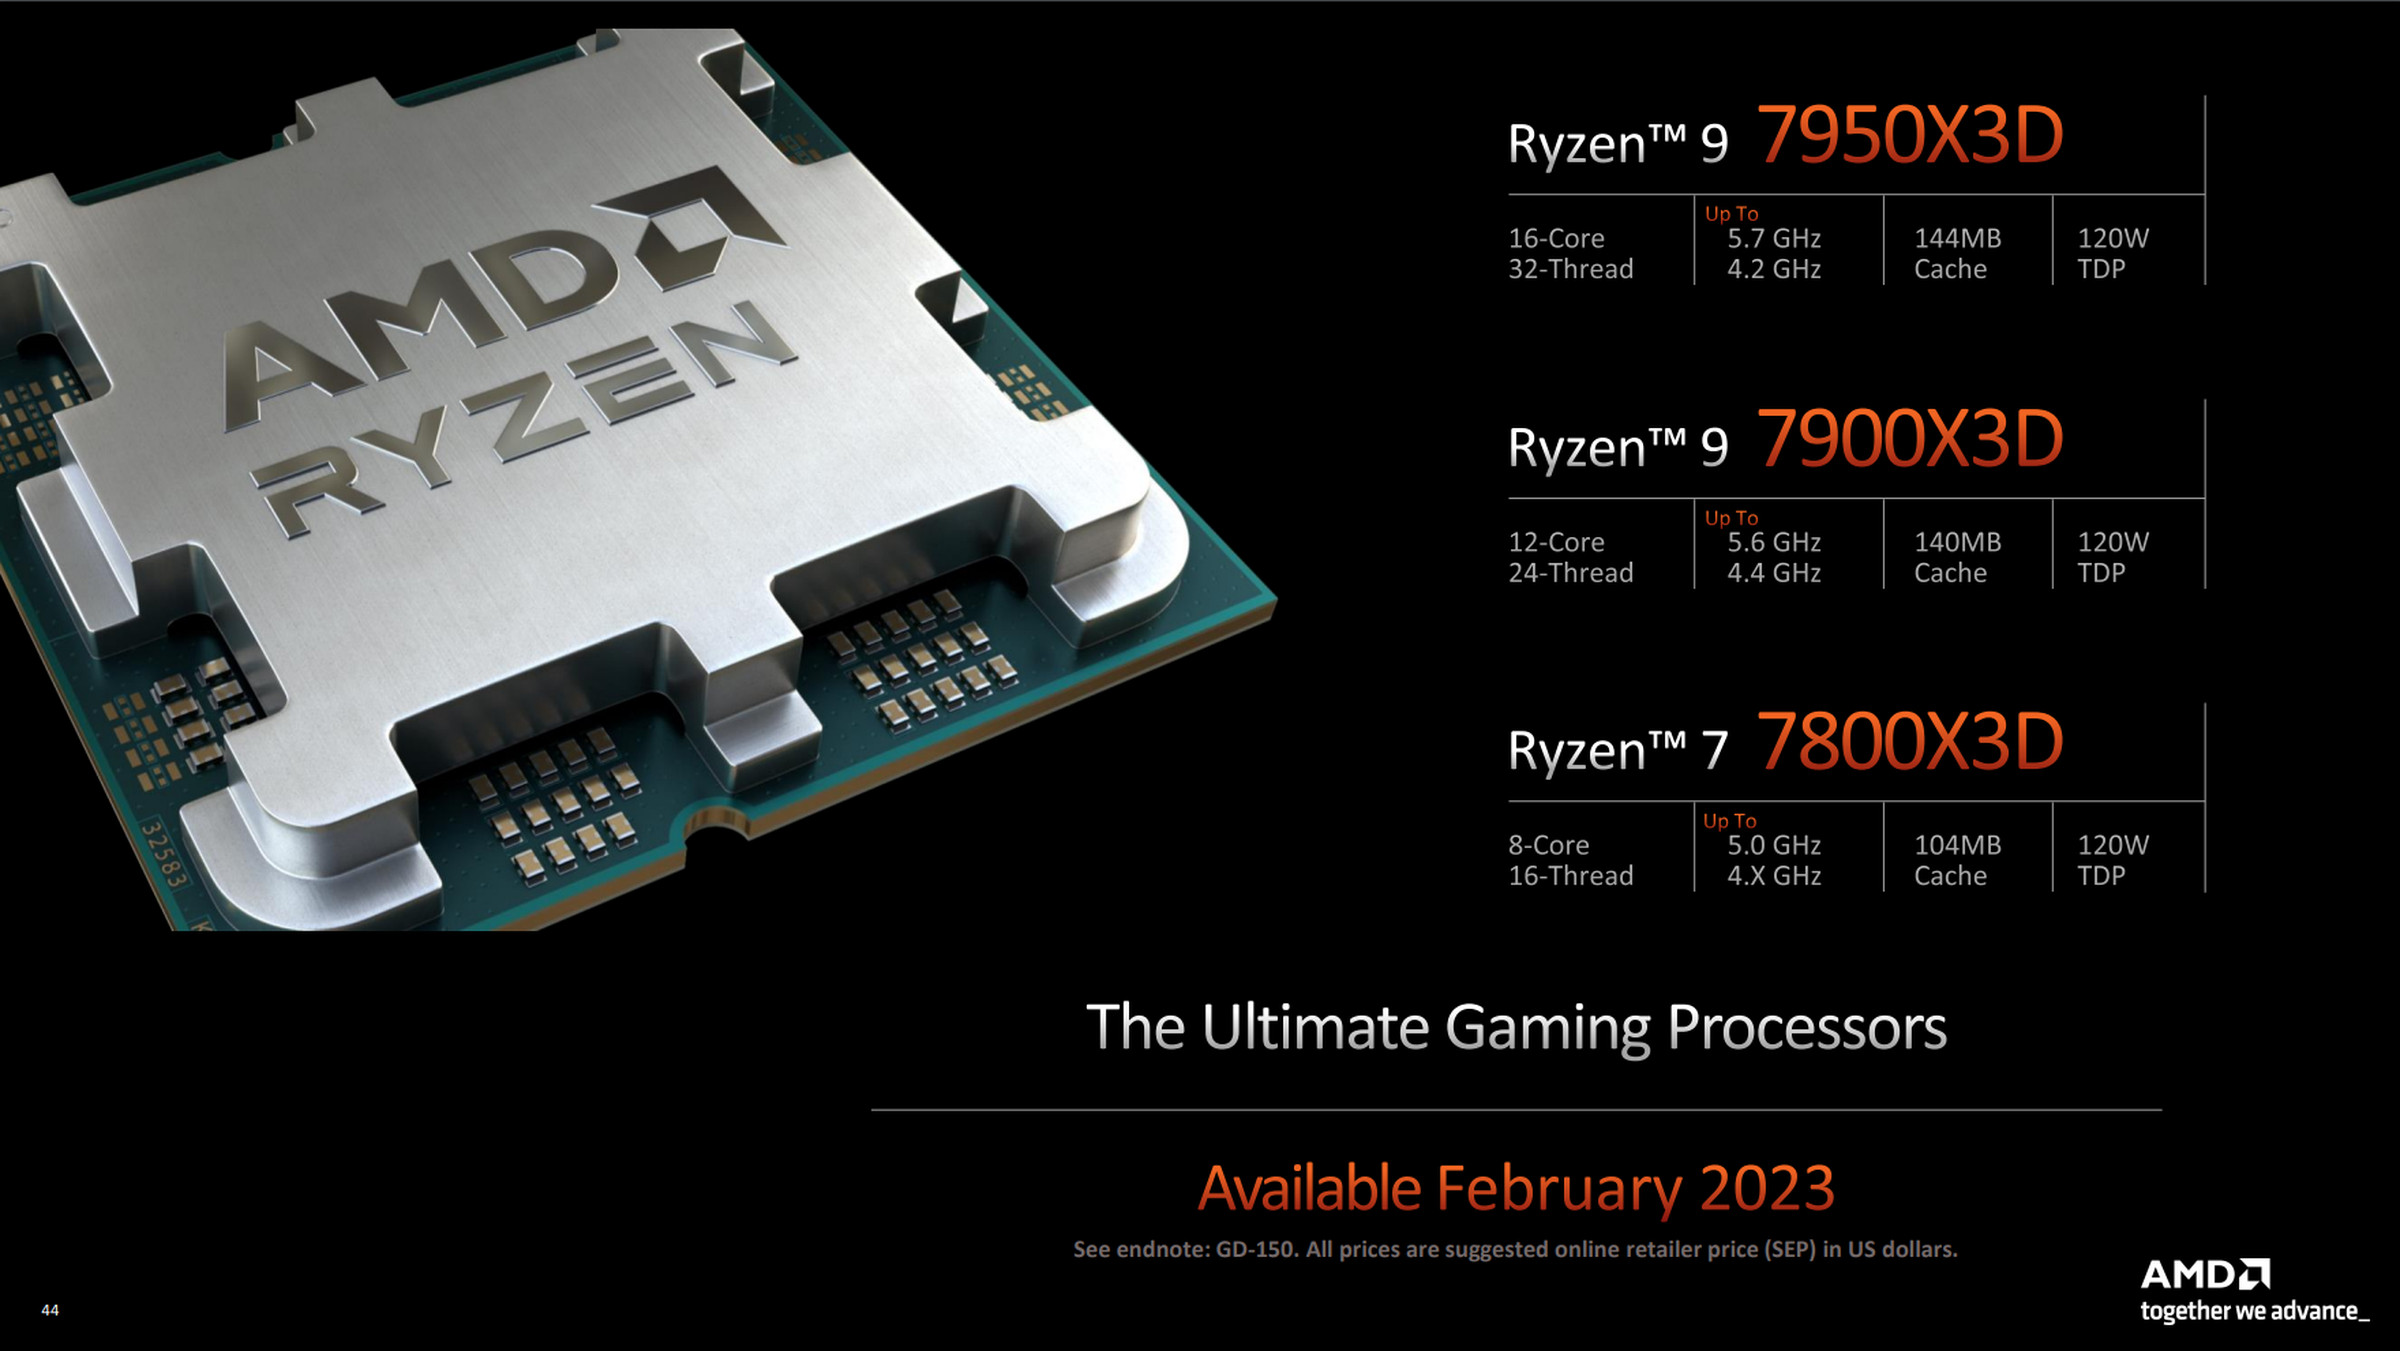  AMDの2023年のRyzen 7000 3Dラインアップ。